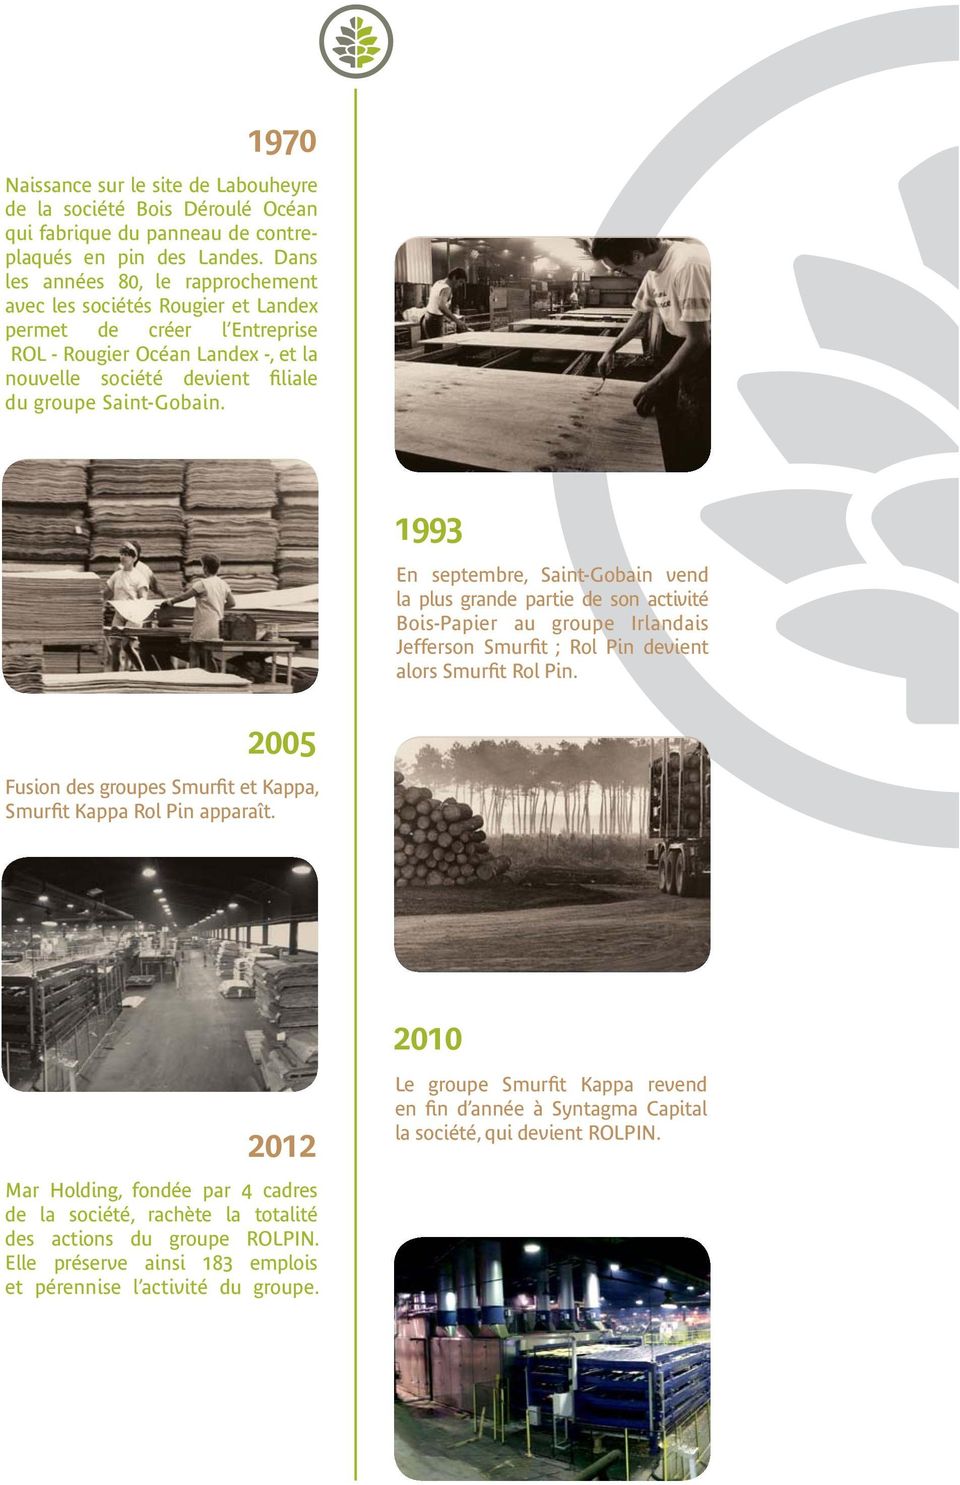 1993 En septembre, Saint-Gobain vend la plus grande partie de son activité Bois-Papier au groupe Irlandais Jefferson Smurfit ; Rol Pin devient alors Smurfit Rol Pin.